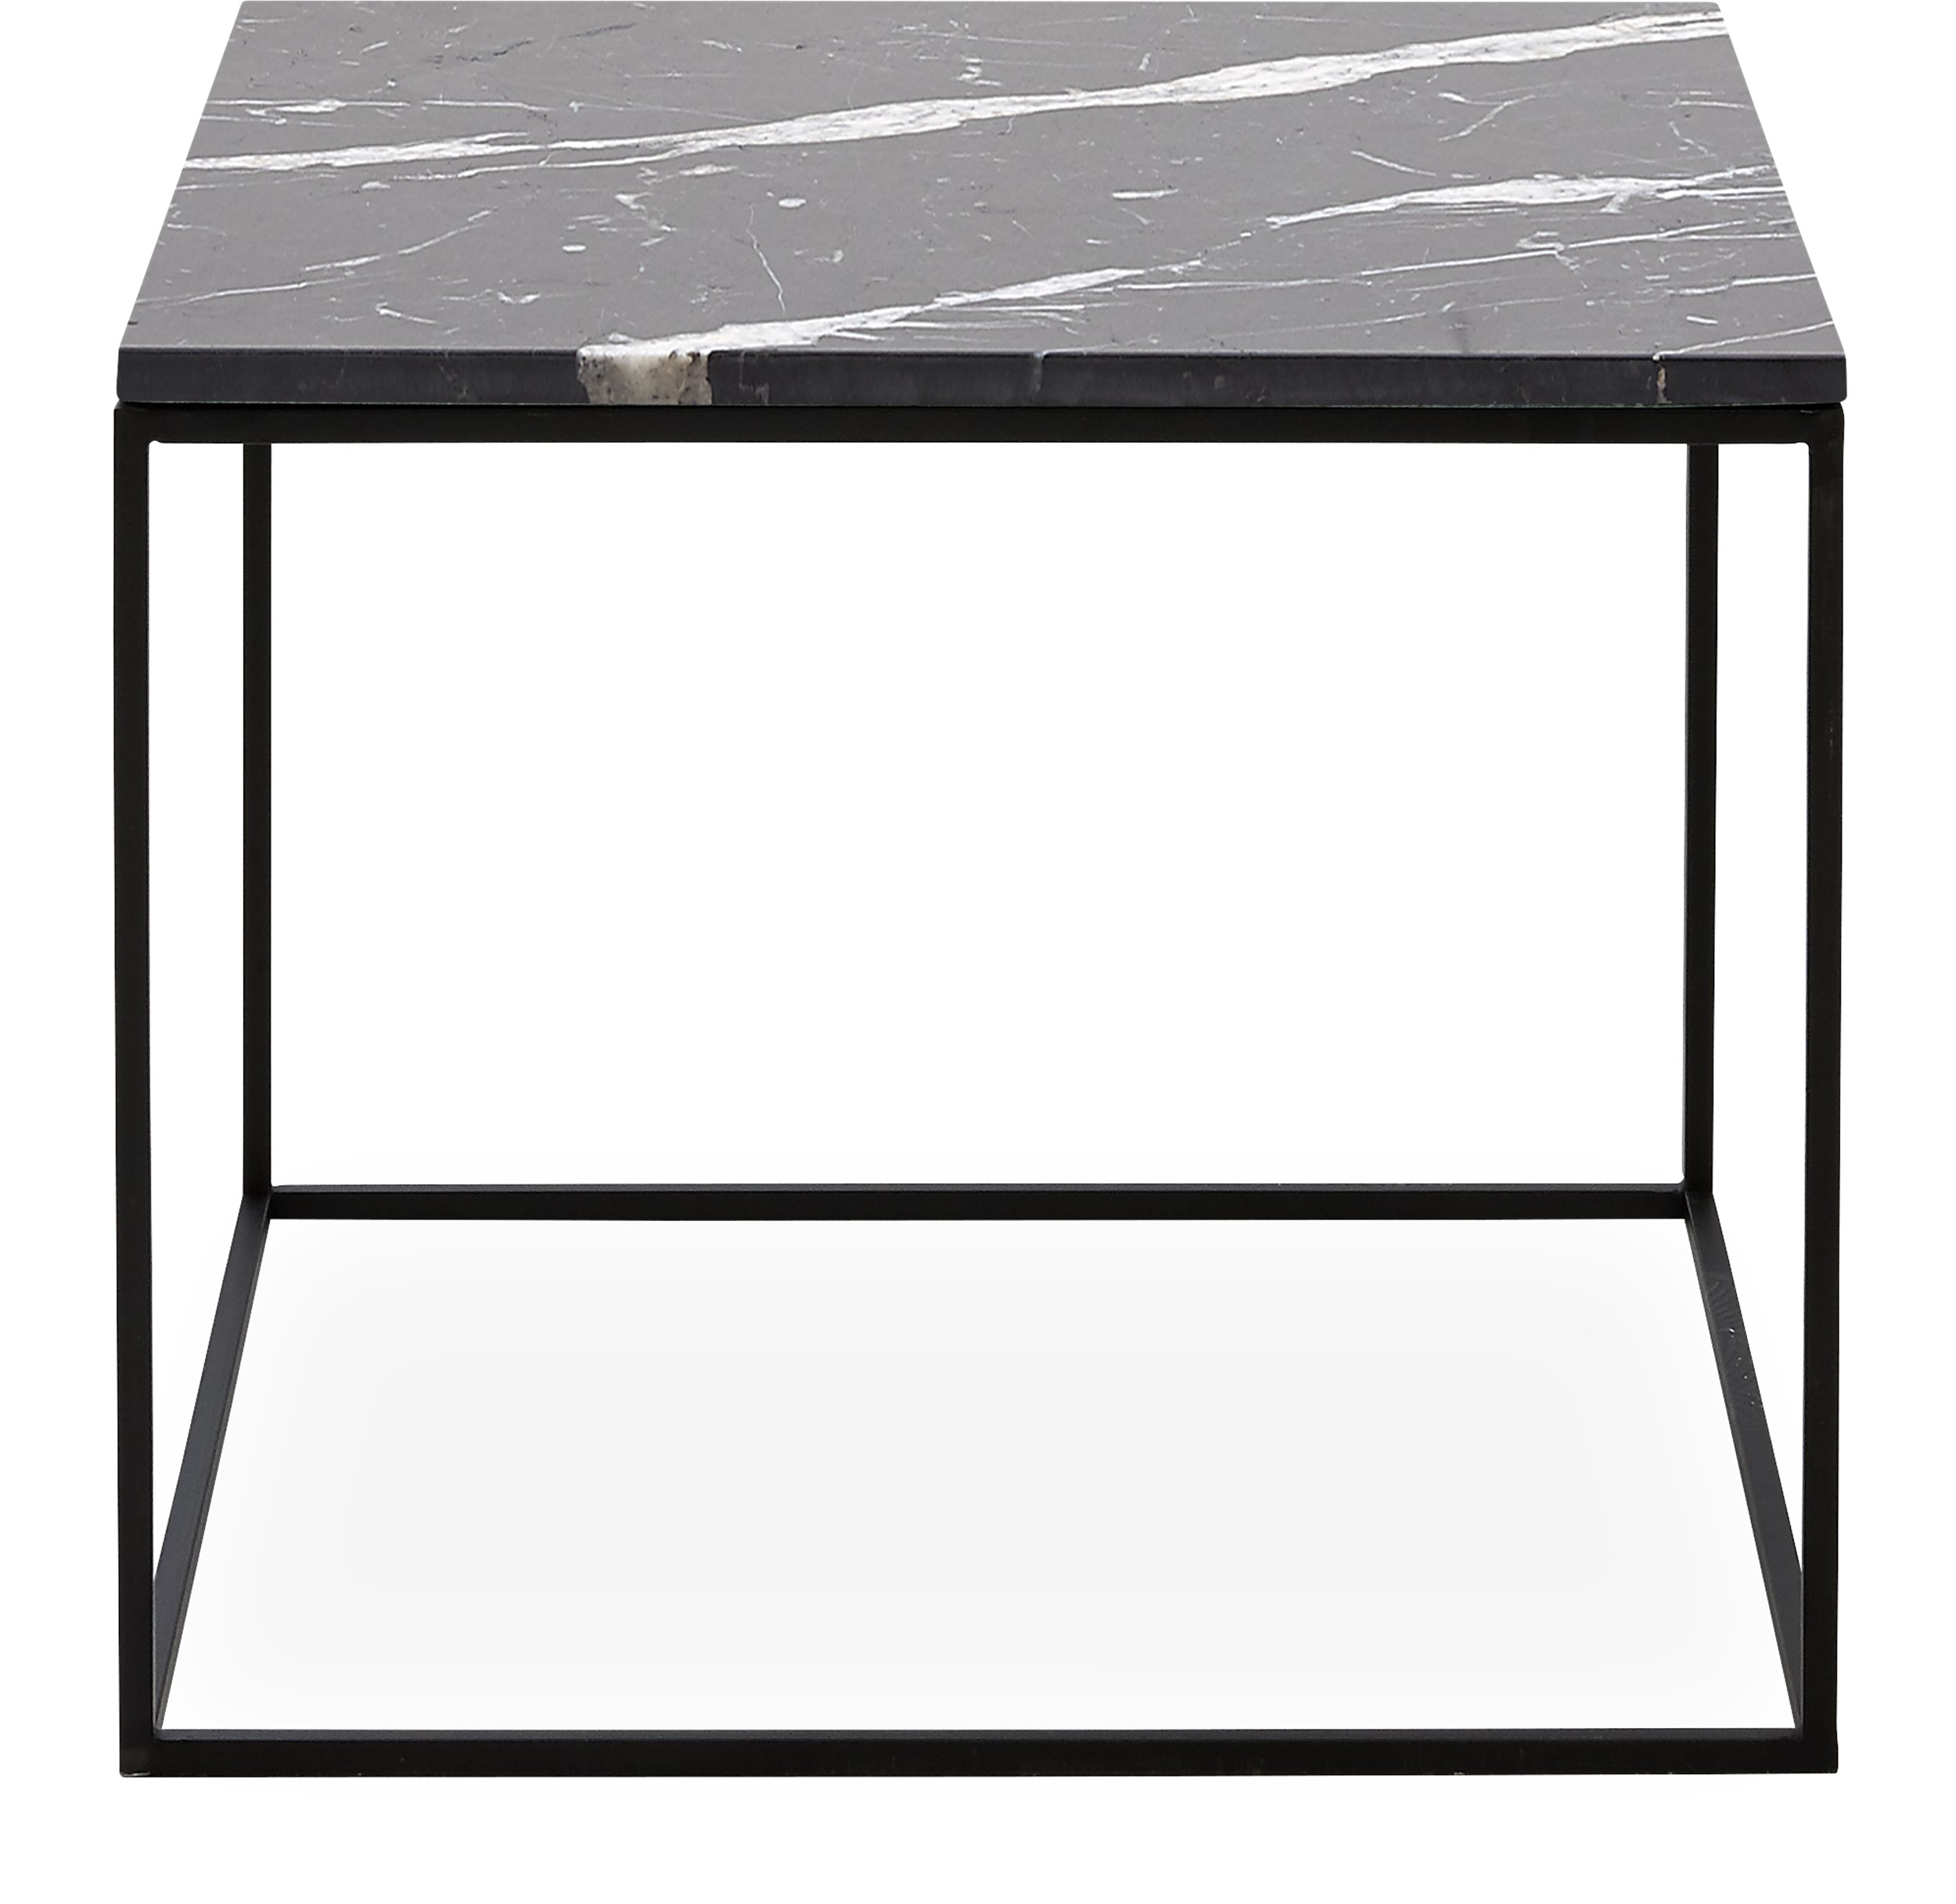 Square Soffbord 50 x 41,6 x 50 cm - Bordsskiva i svart marmor och stomme i svartlackerad metall